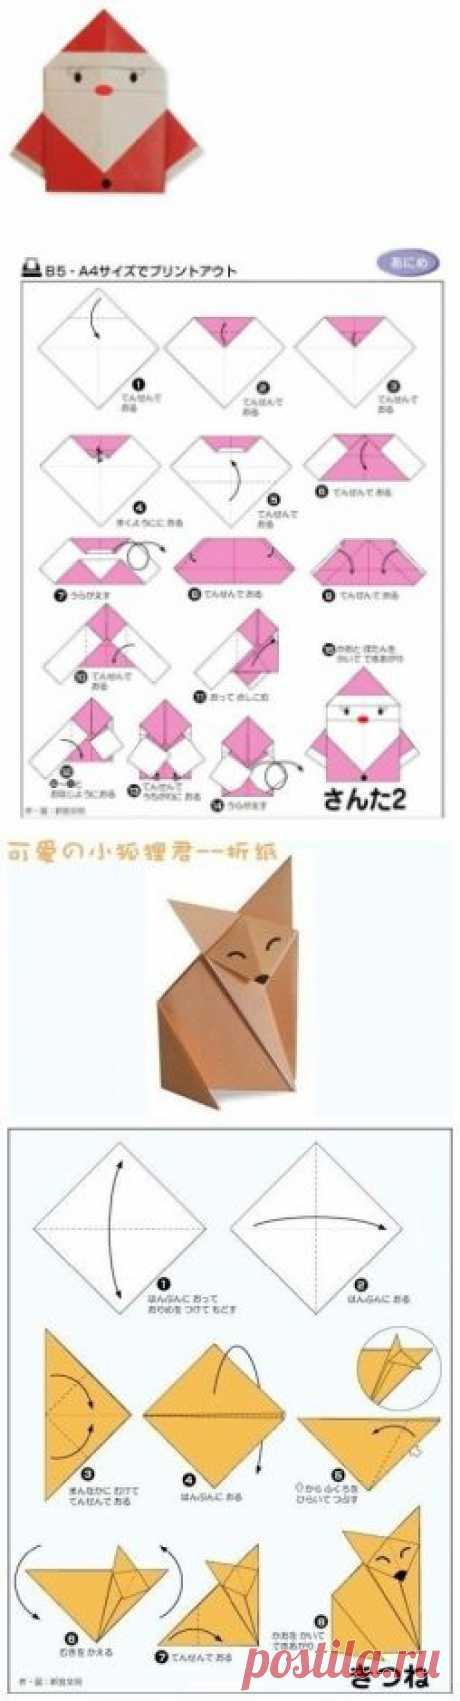 Уроки оригами - Поделки с детьми | Деткиподелки